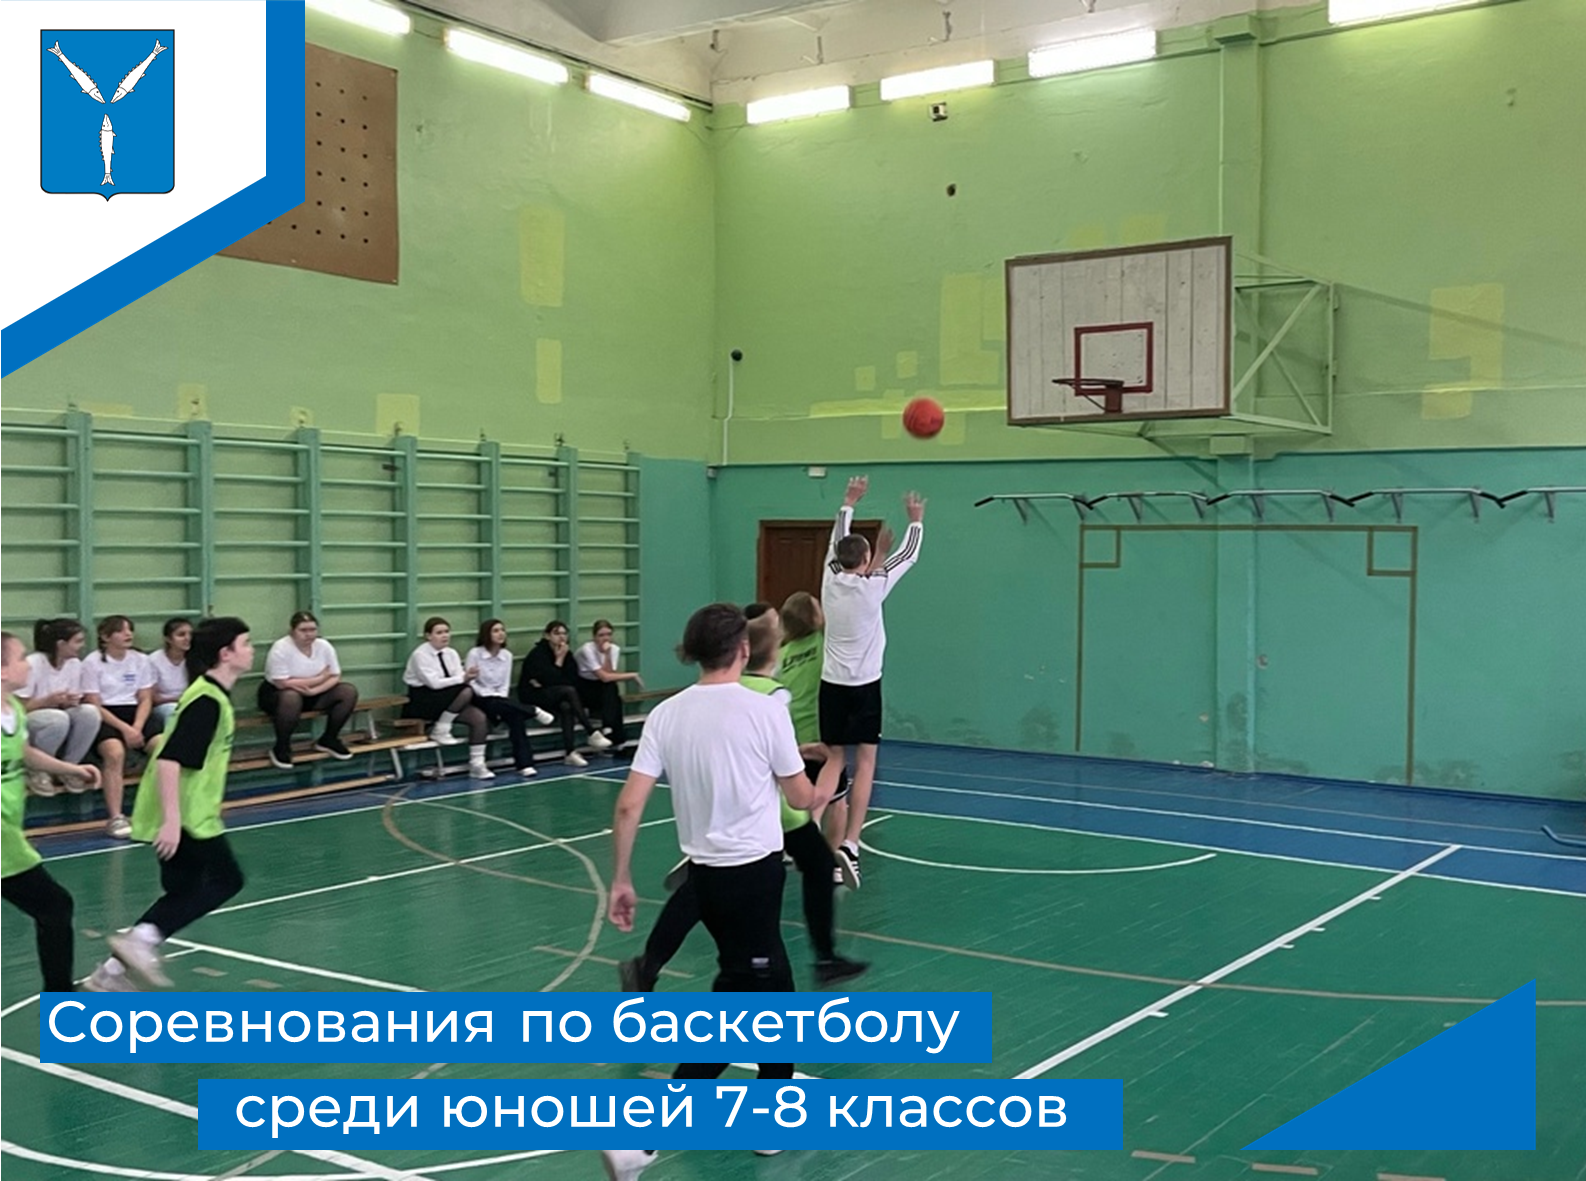 Соревнования по баскетболу среди юношей 7-8 классов.